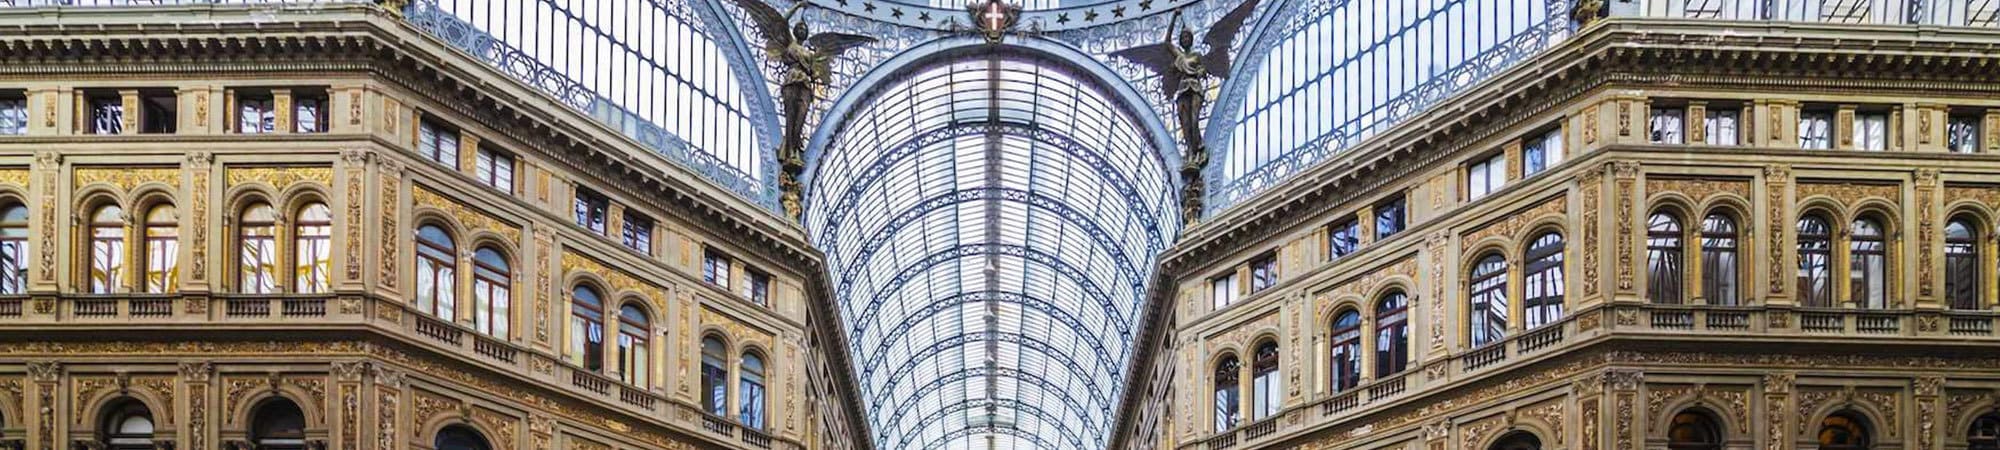 Galleria Umberto Napoli Fiorentino Associati